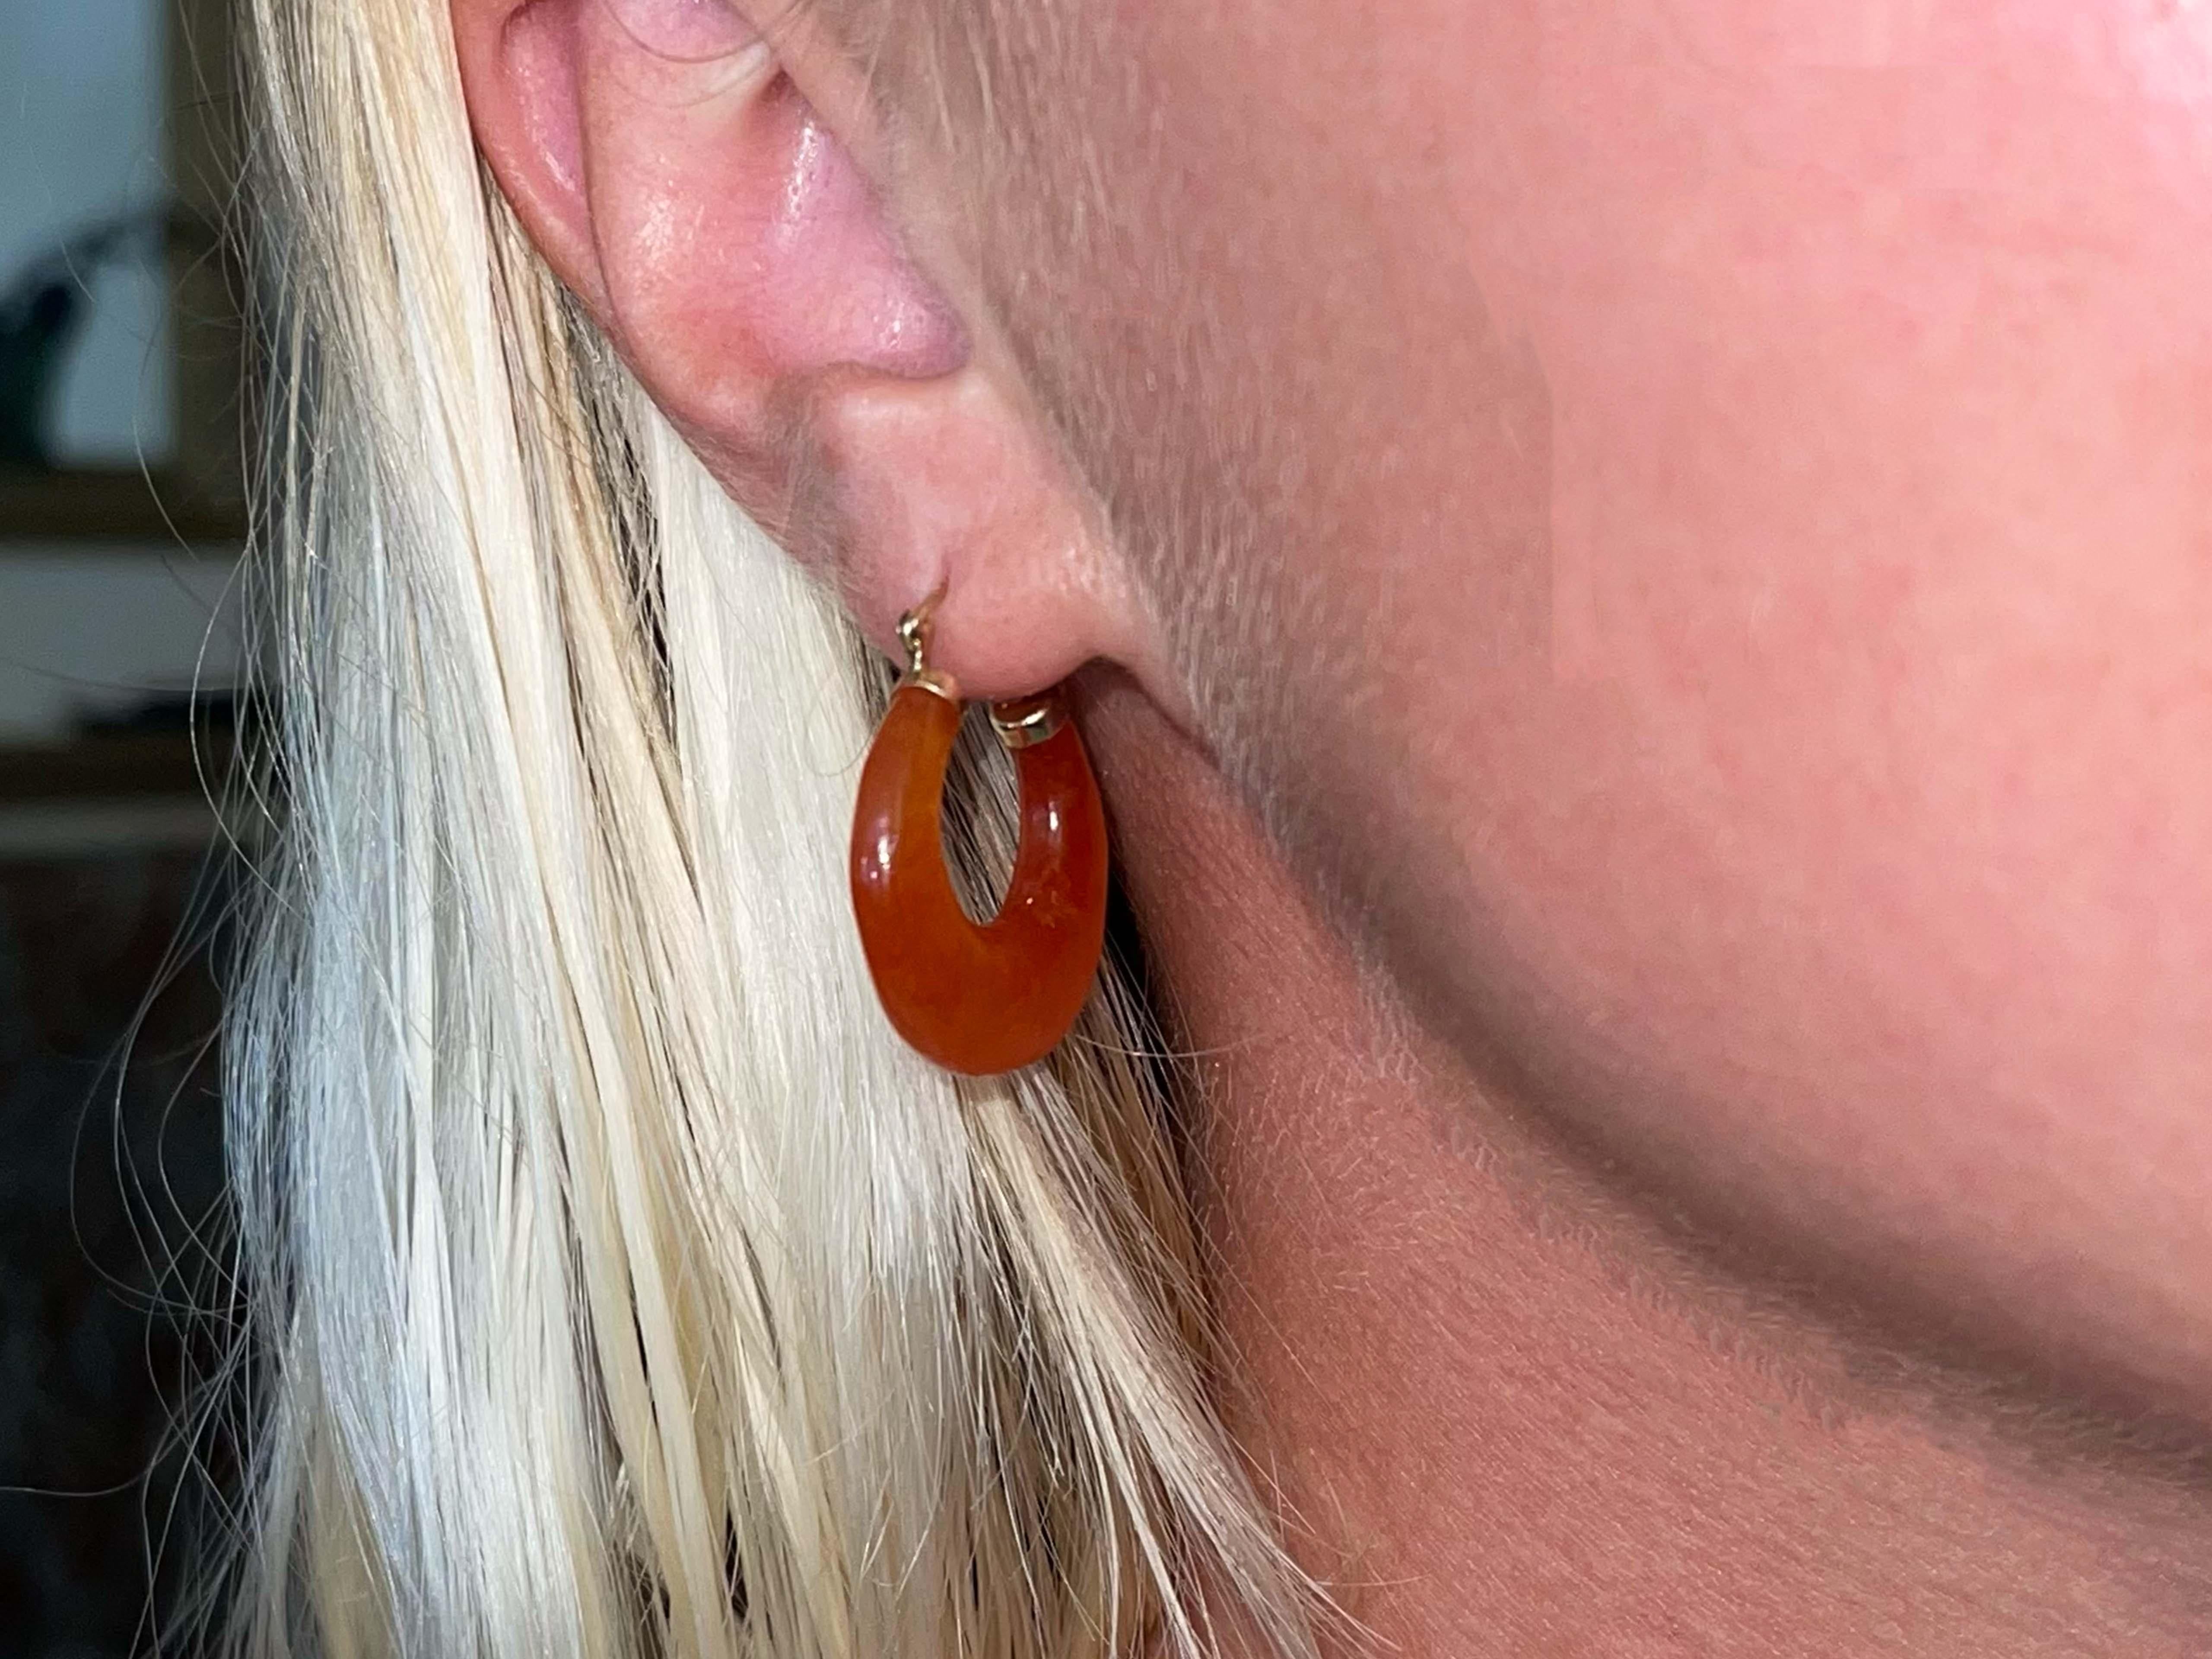 Boucles d'oreilles Spécifications :

Métal : Or jaune 14K

Pierre précieuse : Cornaline

Longueur de la boucle d'oreille : 23.67 mm

Poids total : 8,1 grammes

Estampillé : 